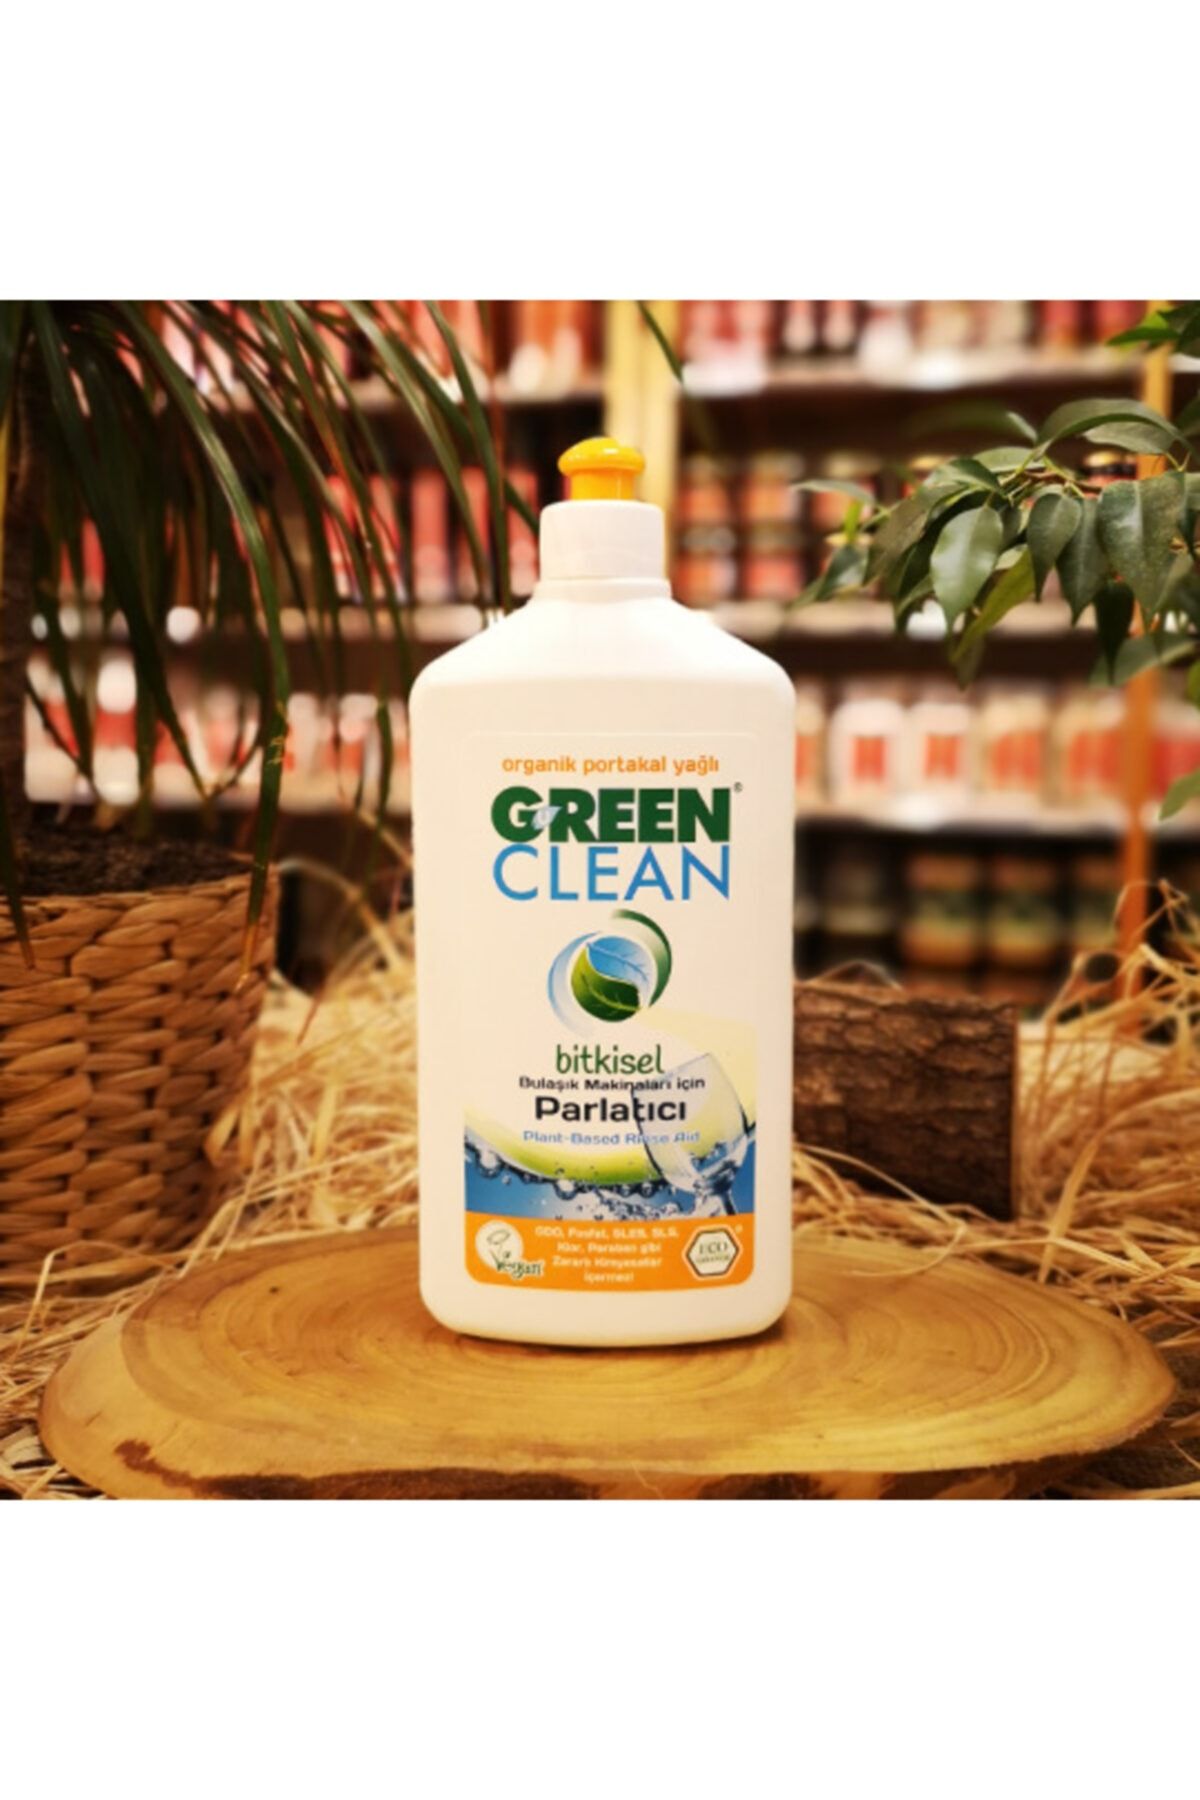 Green Clean Organik Portakal Yağlı Bulaşık Makinesi Parlatıcı 500 ml